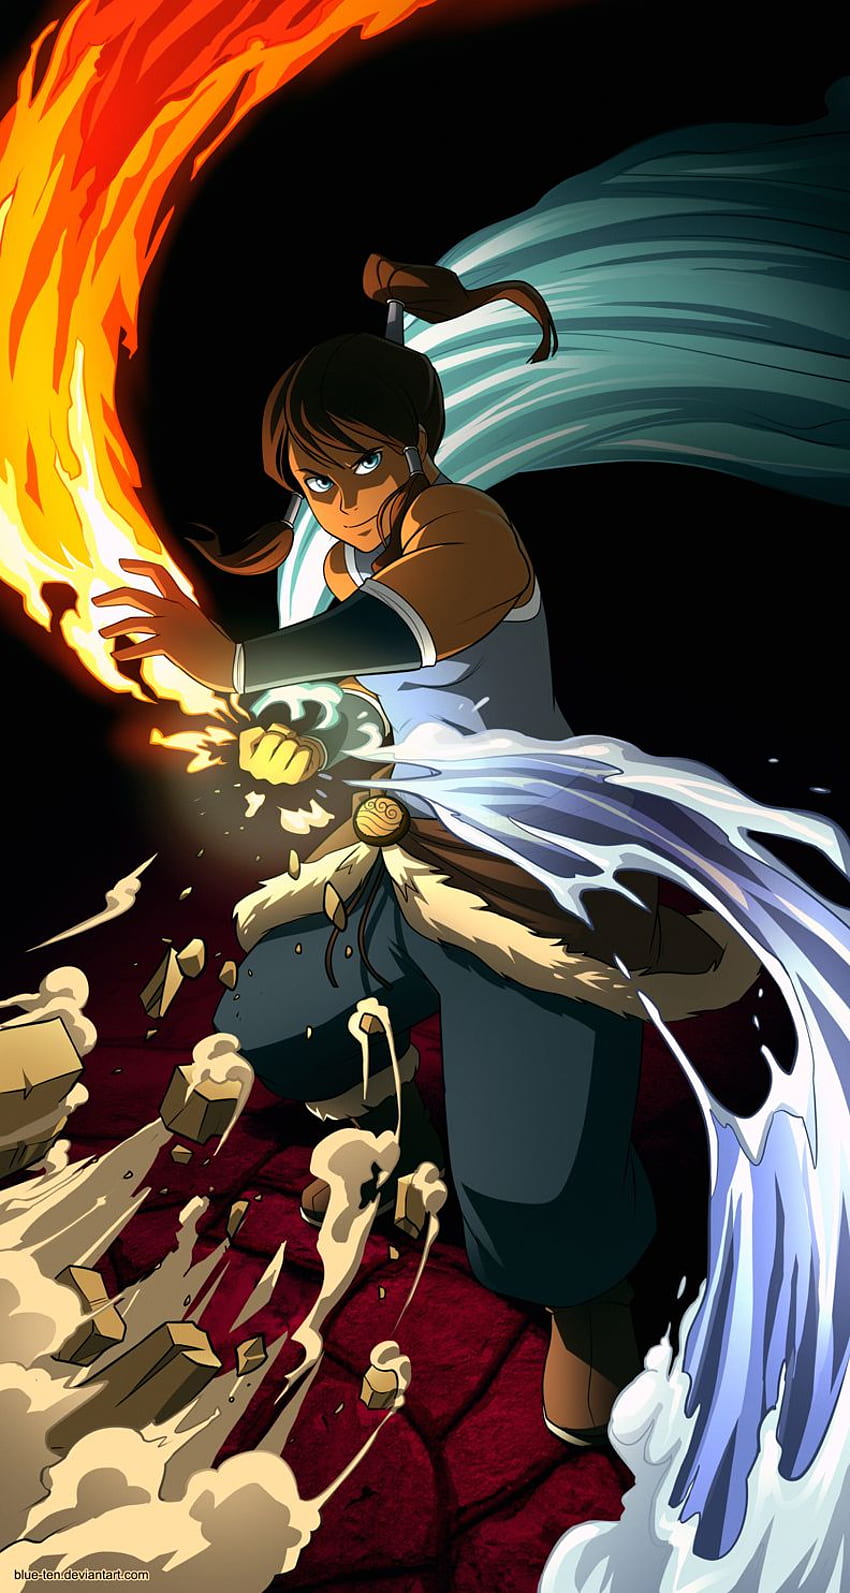 Shadow Lady Mobile Legends anime avatar: Sự kết hợp giữa Mobile Legends và anime avatar tạo nên Shadow Lady đầy ma thuật và bí ẩn, đem lại trải nghiệm chơi game đầy mới lạ và thú vị!